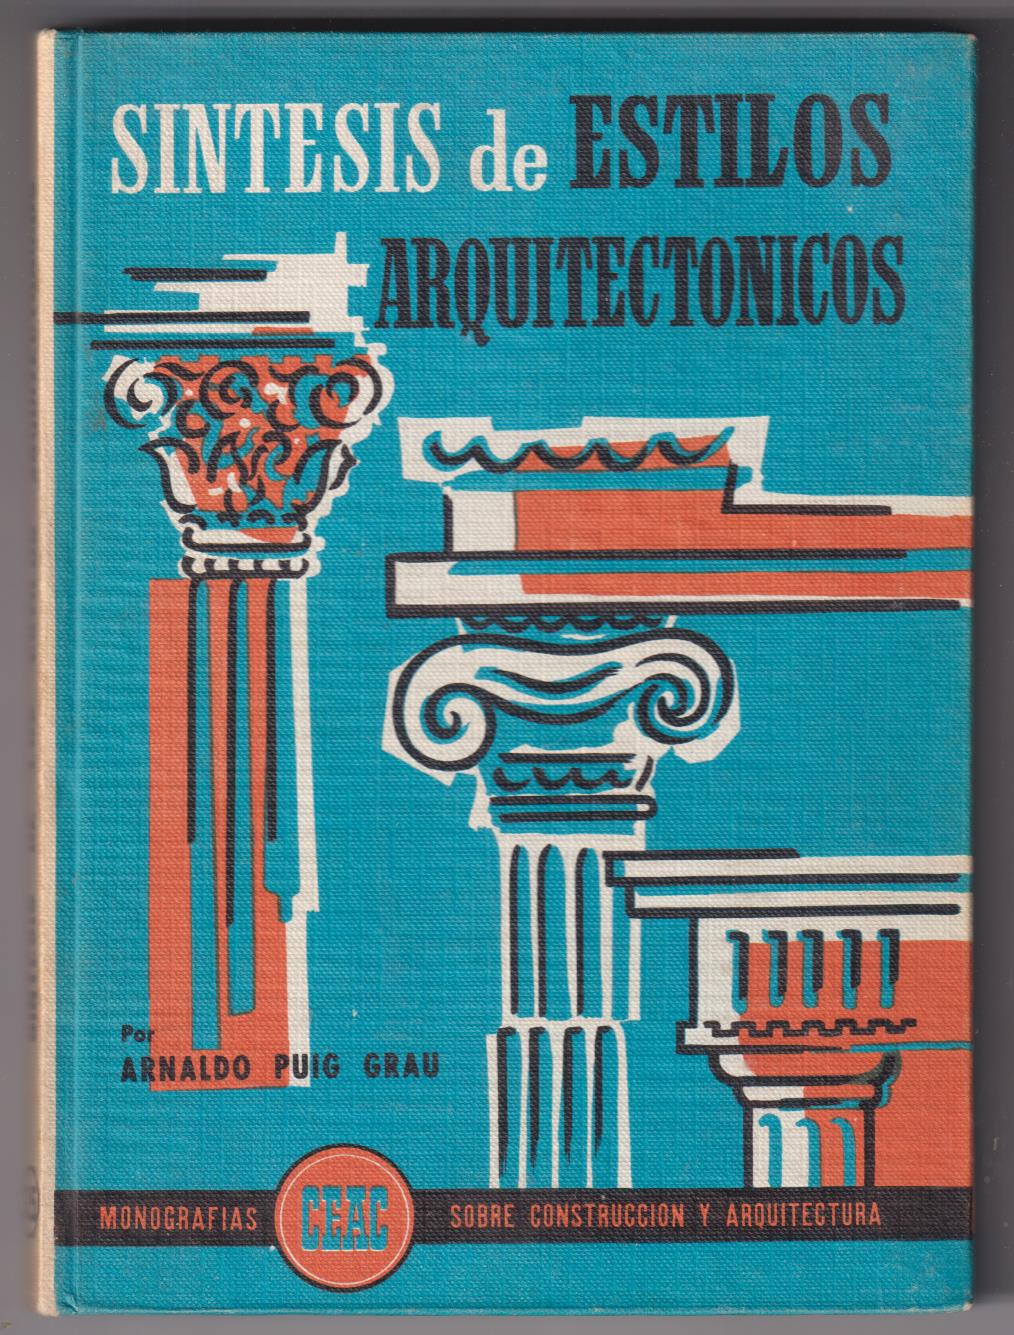 Síntesis de Estilos Arquitectónicos. Ceac 1963